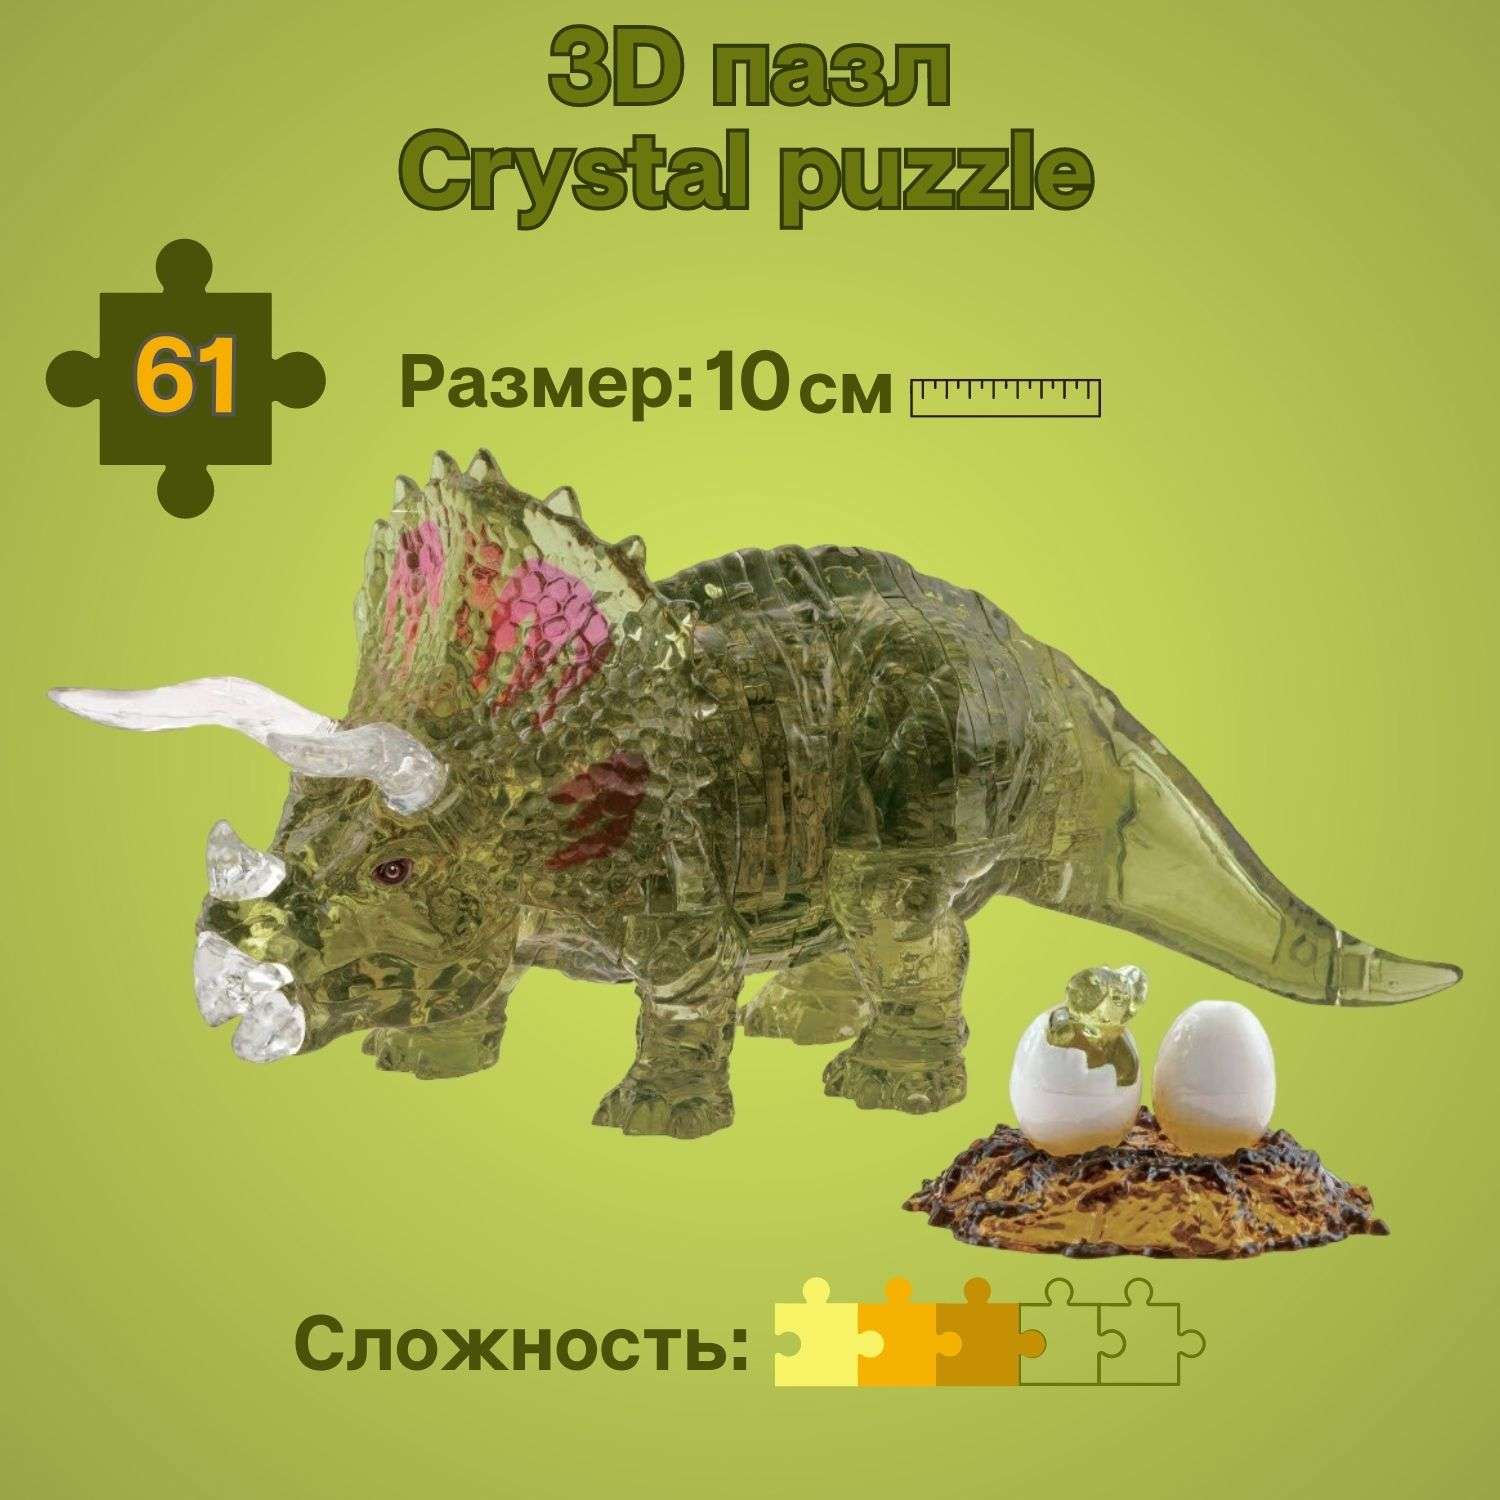 3D-пазл Crystal Puzzle IQ игра для детей кристальная Трицератопс 61 деталь - фото 1